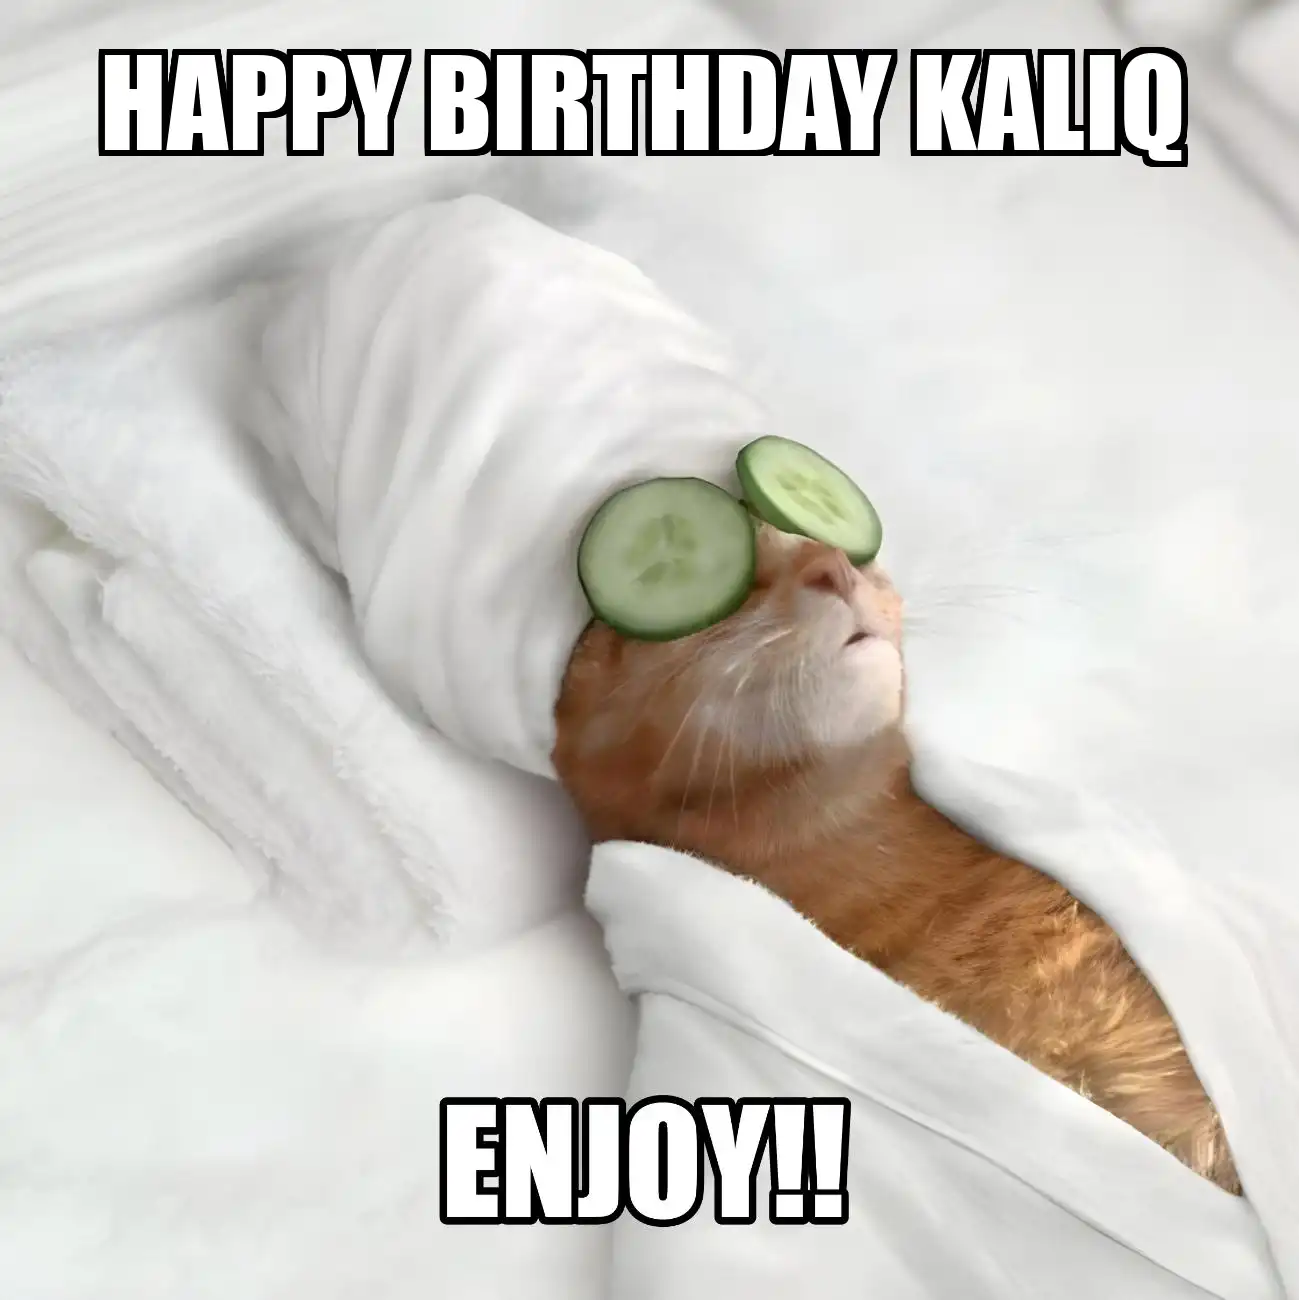 Happy Birthday Kaliq Enjoy Cat Meme